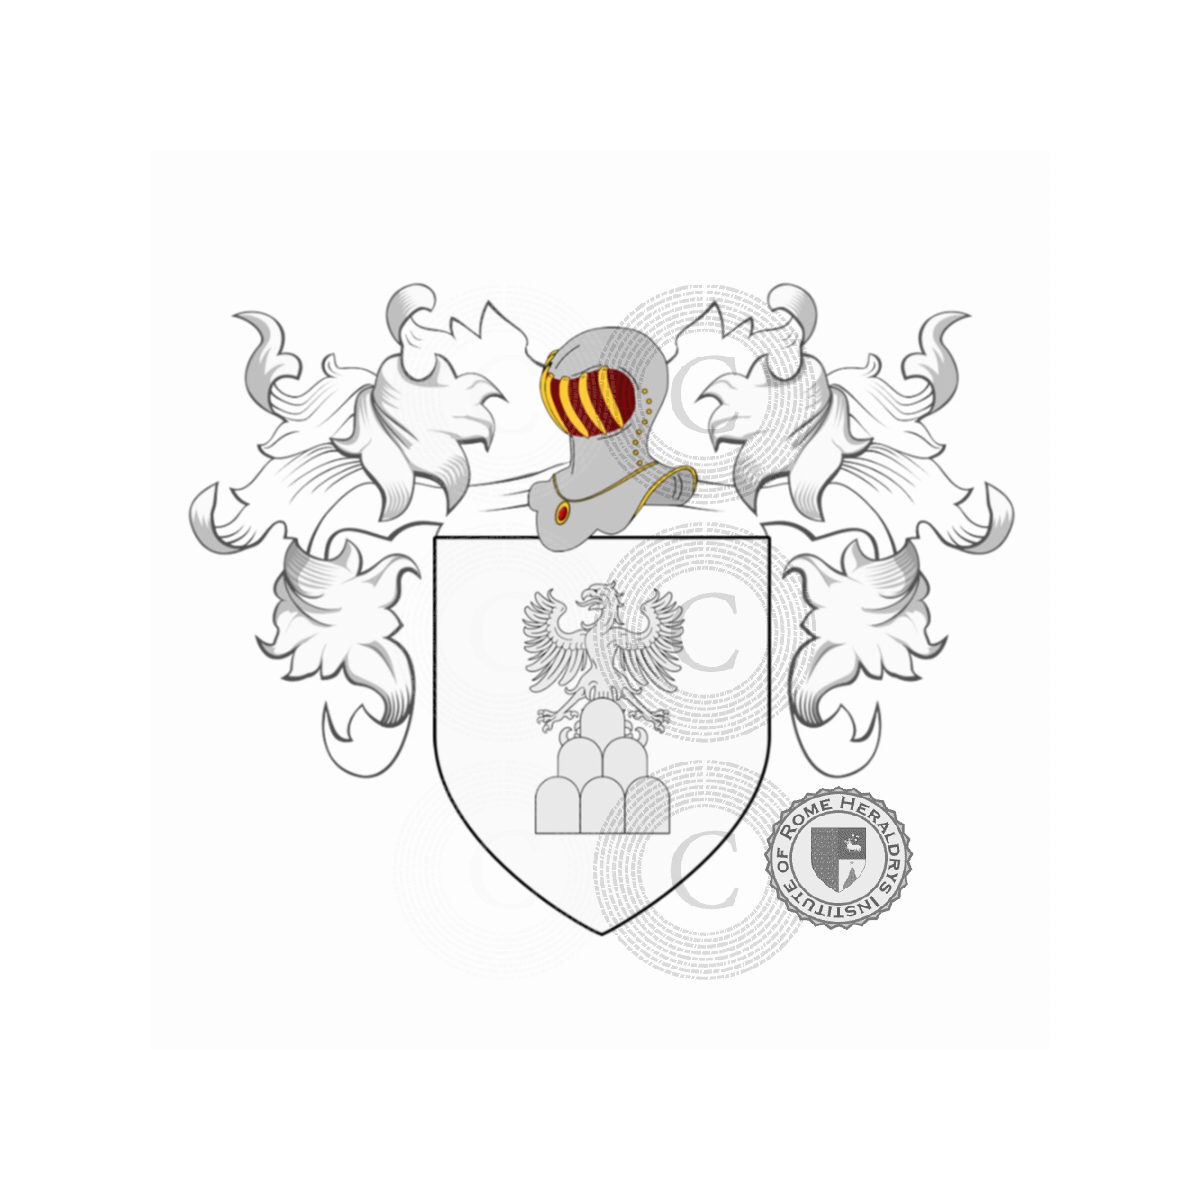 Escudo de la familiaCecchi, Cecchi del Cane,Cecchi del Drago,Cecchi delle Ruote,Cecchi Toldi